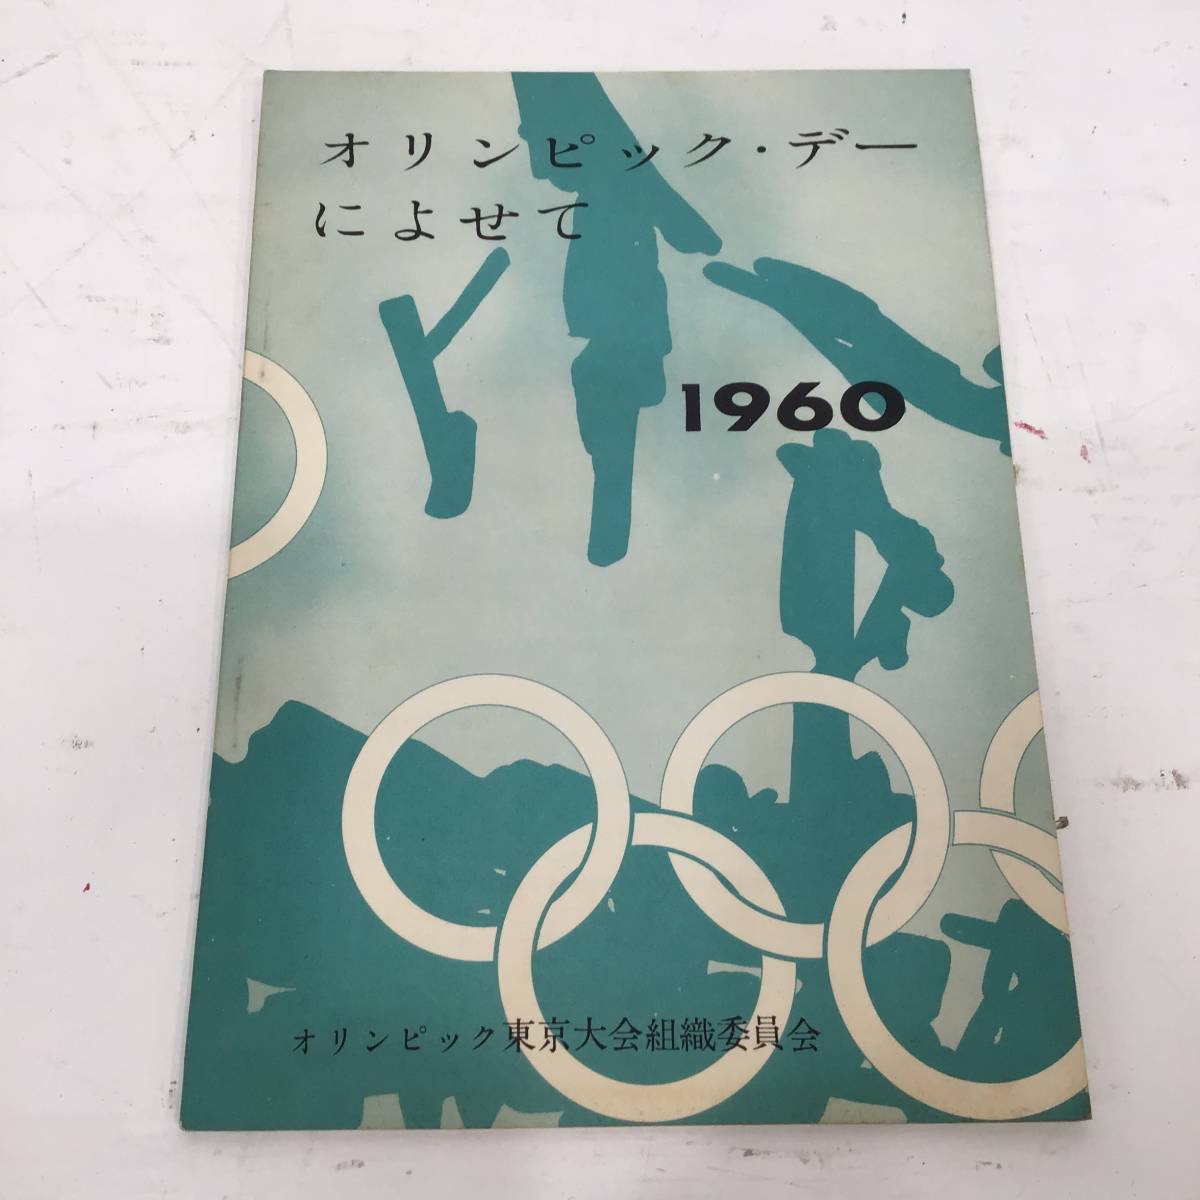 *22K431 1 オリンピック・デーによせて 1960 オリンピック東京大会組織委員会 中古_画像1